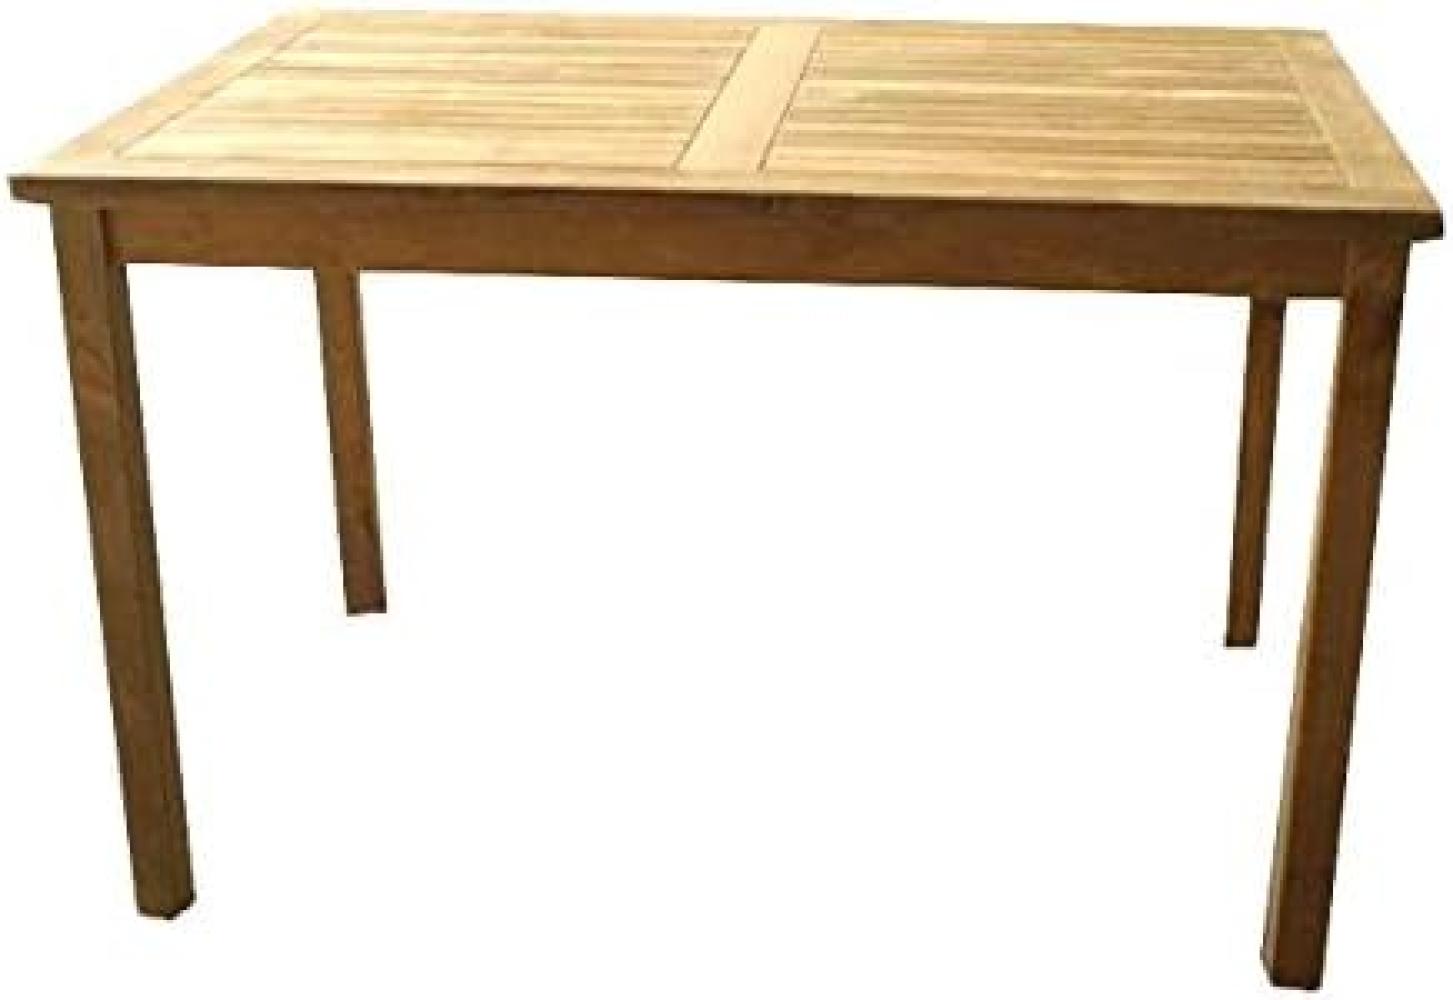 Premium Teak Tisch rechteckig Gartentisch Gartenmöbel Teakmöbel Holztisch 110 cm Bild 1